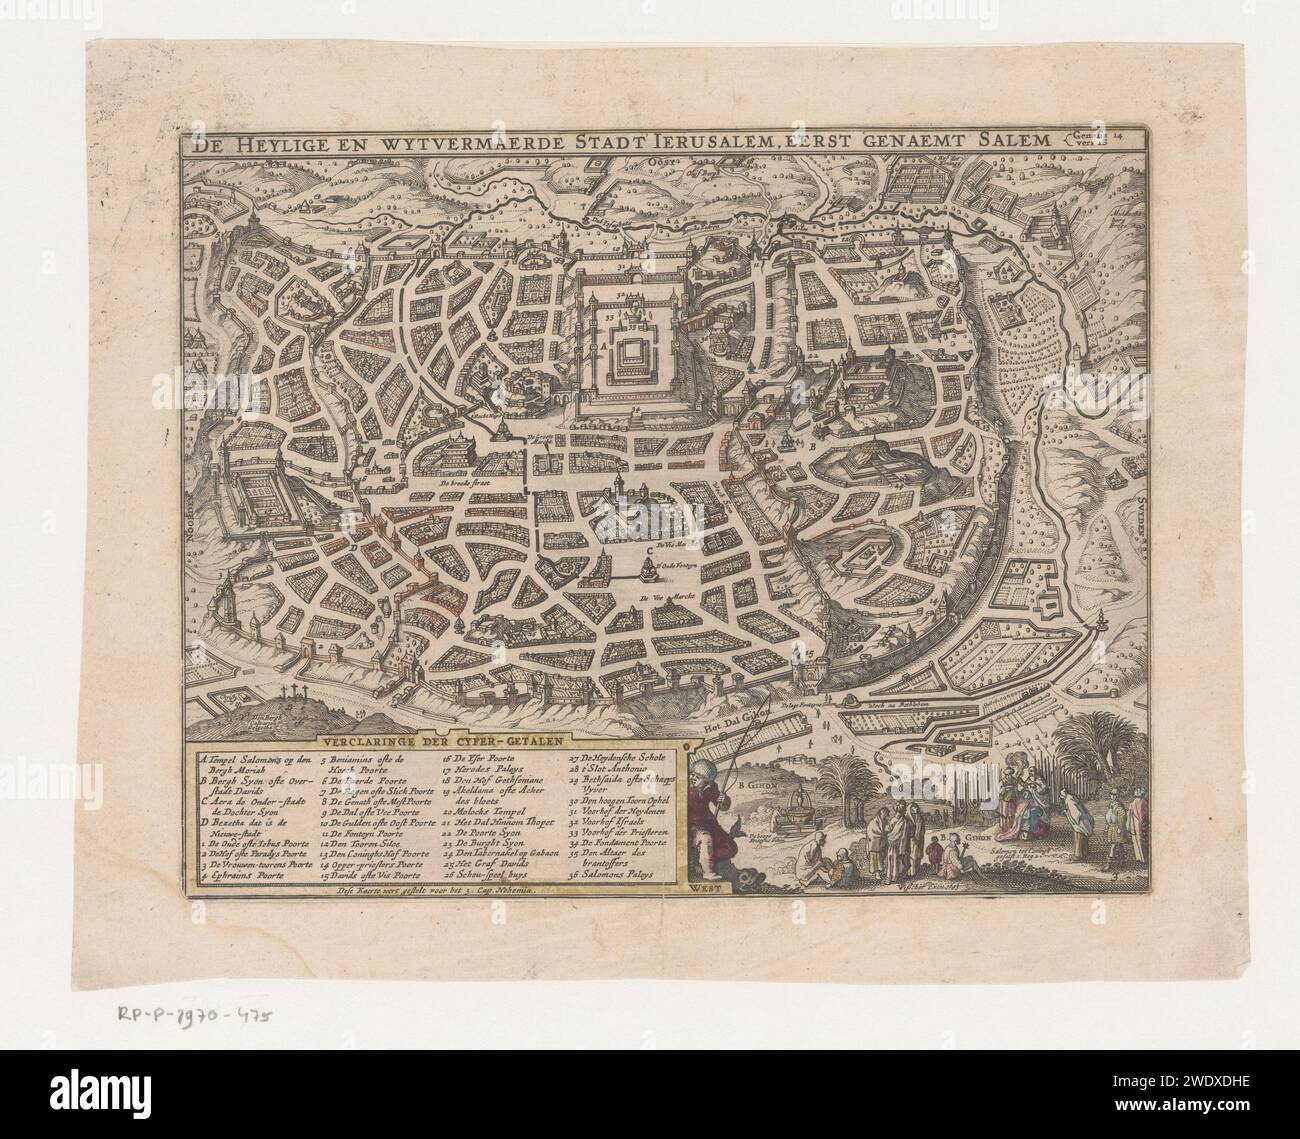 Vue de vol d'oiseau de Jérusalem, 1643, Claes Jansz. Visscher (II), 1643 estampes vue imaginaire de vol d'oiseau de la ville de Jérusalem. En bas à gauche un cartouche avec des indications de nom. En bas à droite, le couronnement de Salomon est représenté. Amsterdam papier gravure cartes des villes Jérusalem Banque D'Images